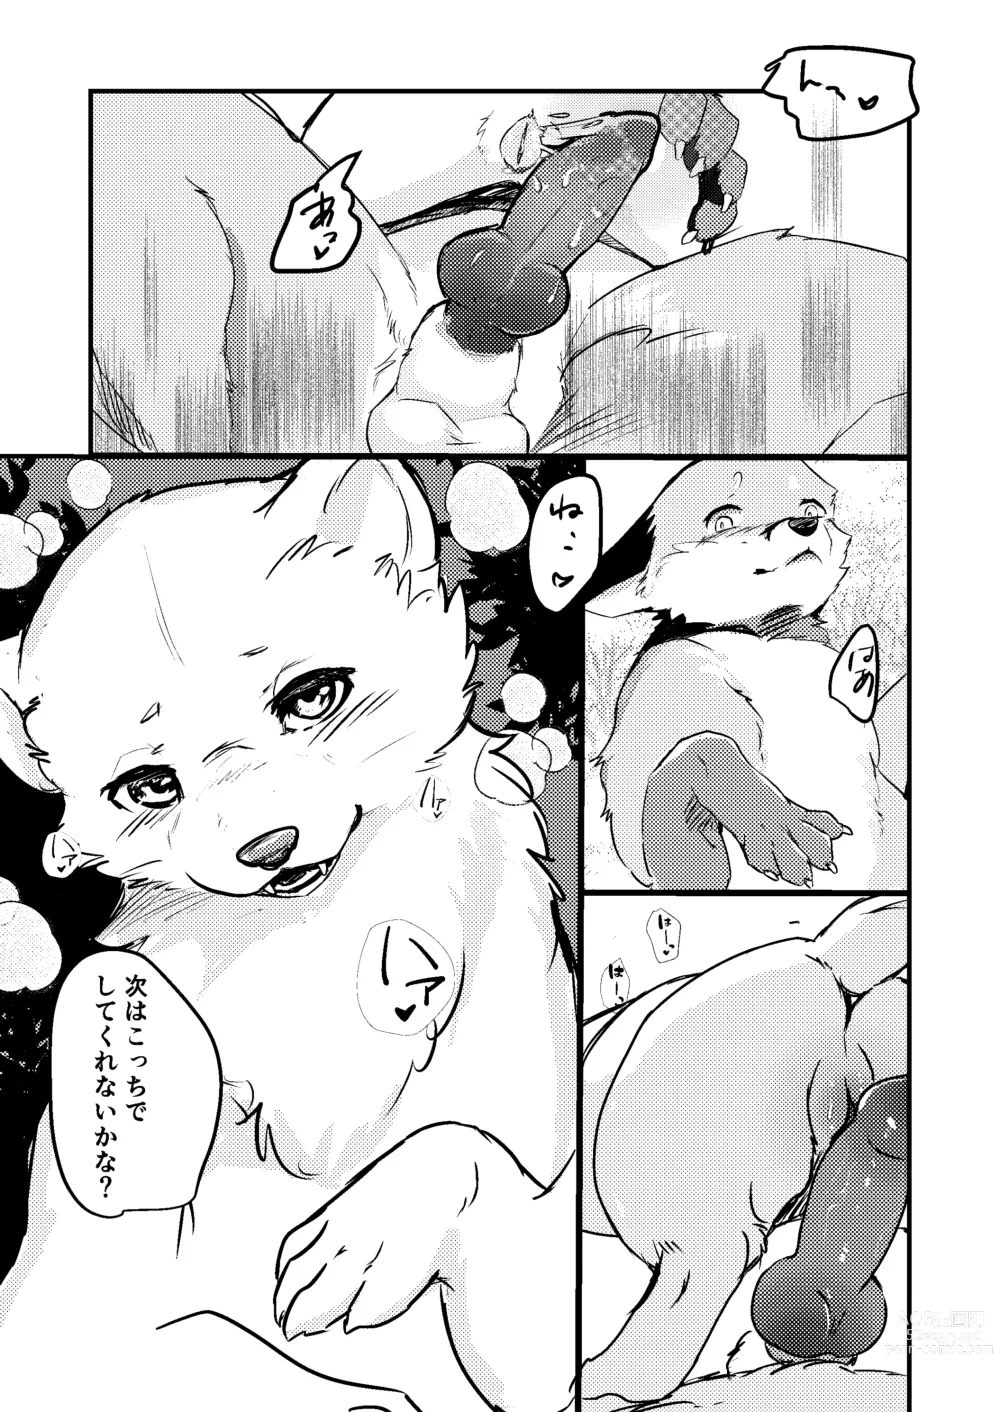 Page 12 of doujinshi Haru no nioi ni sasowarete (uncensored)